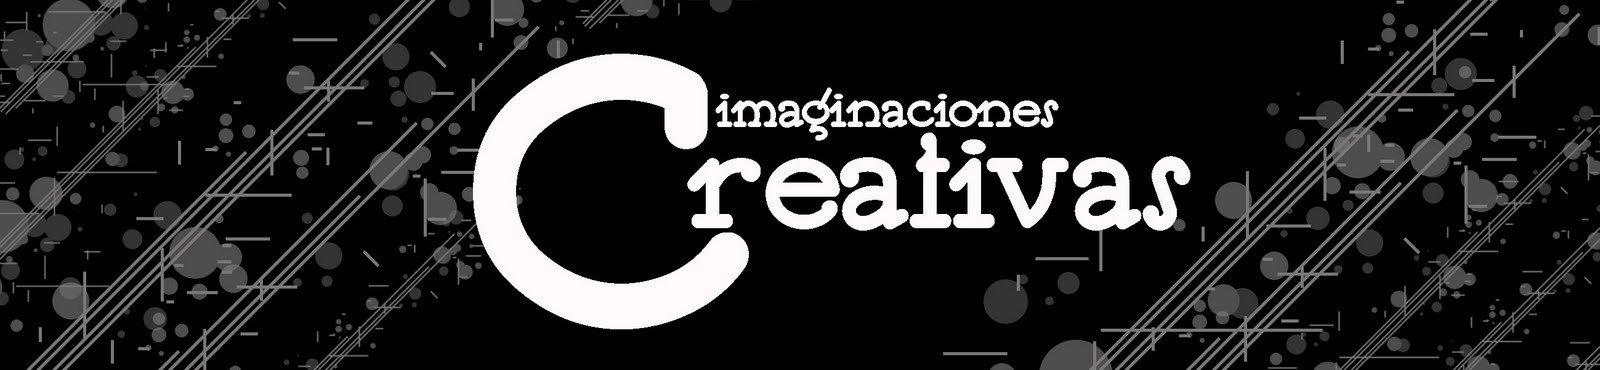 Imaginaciones creativas